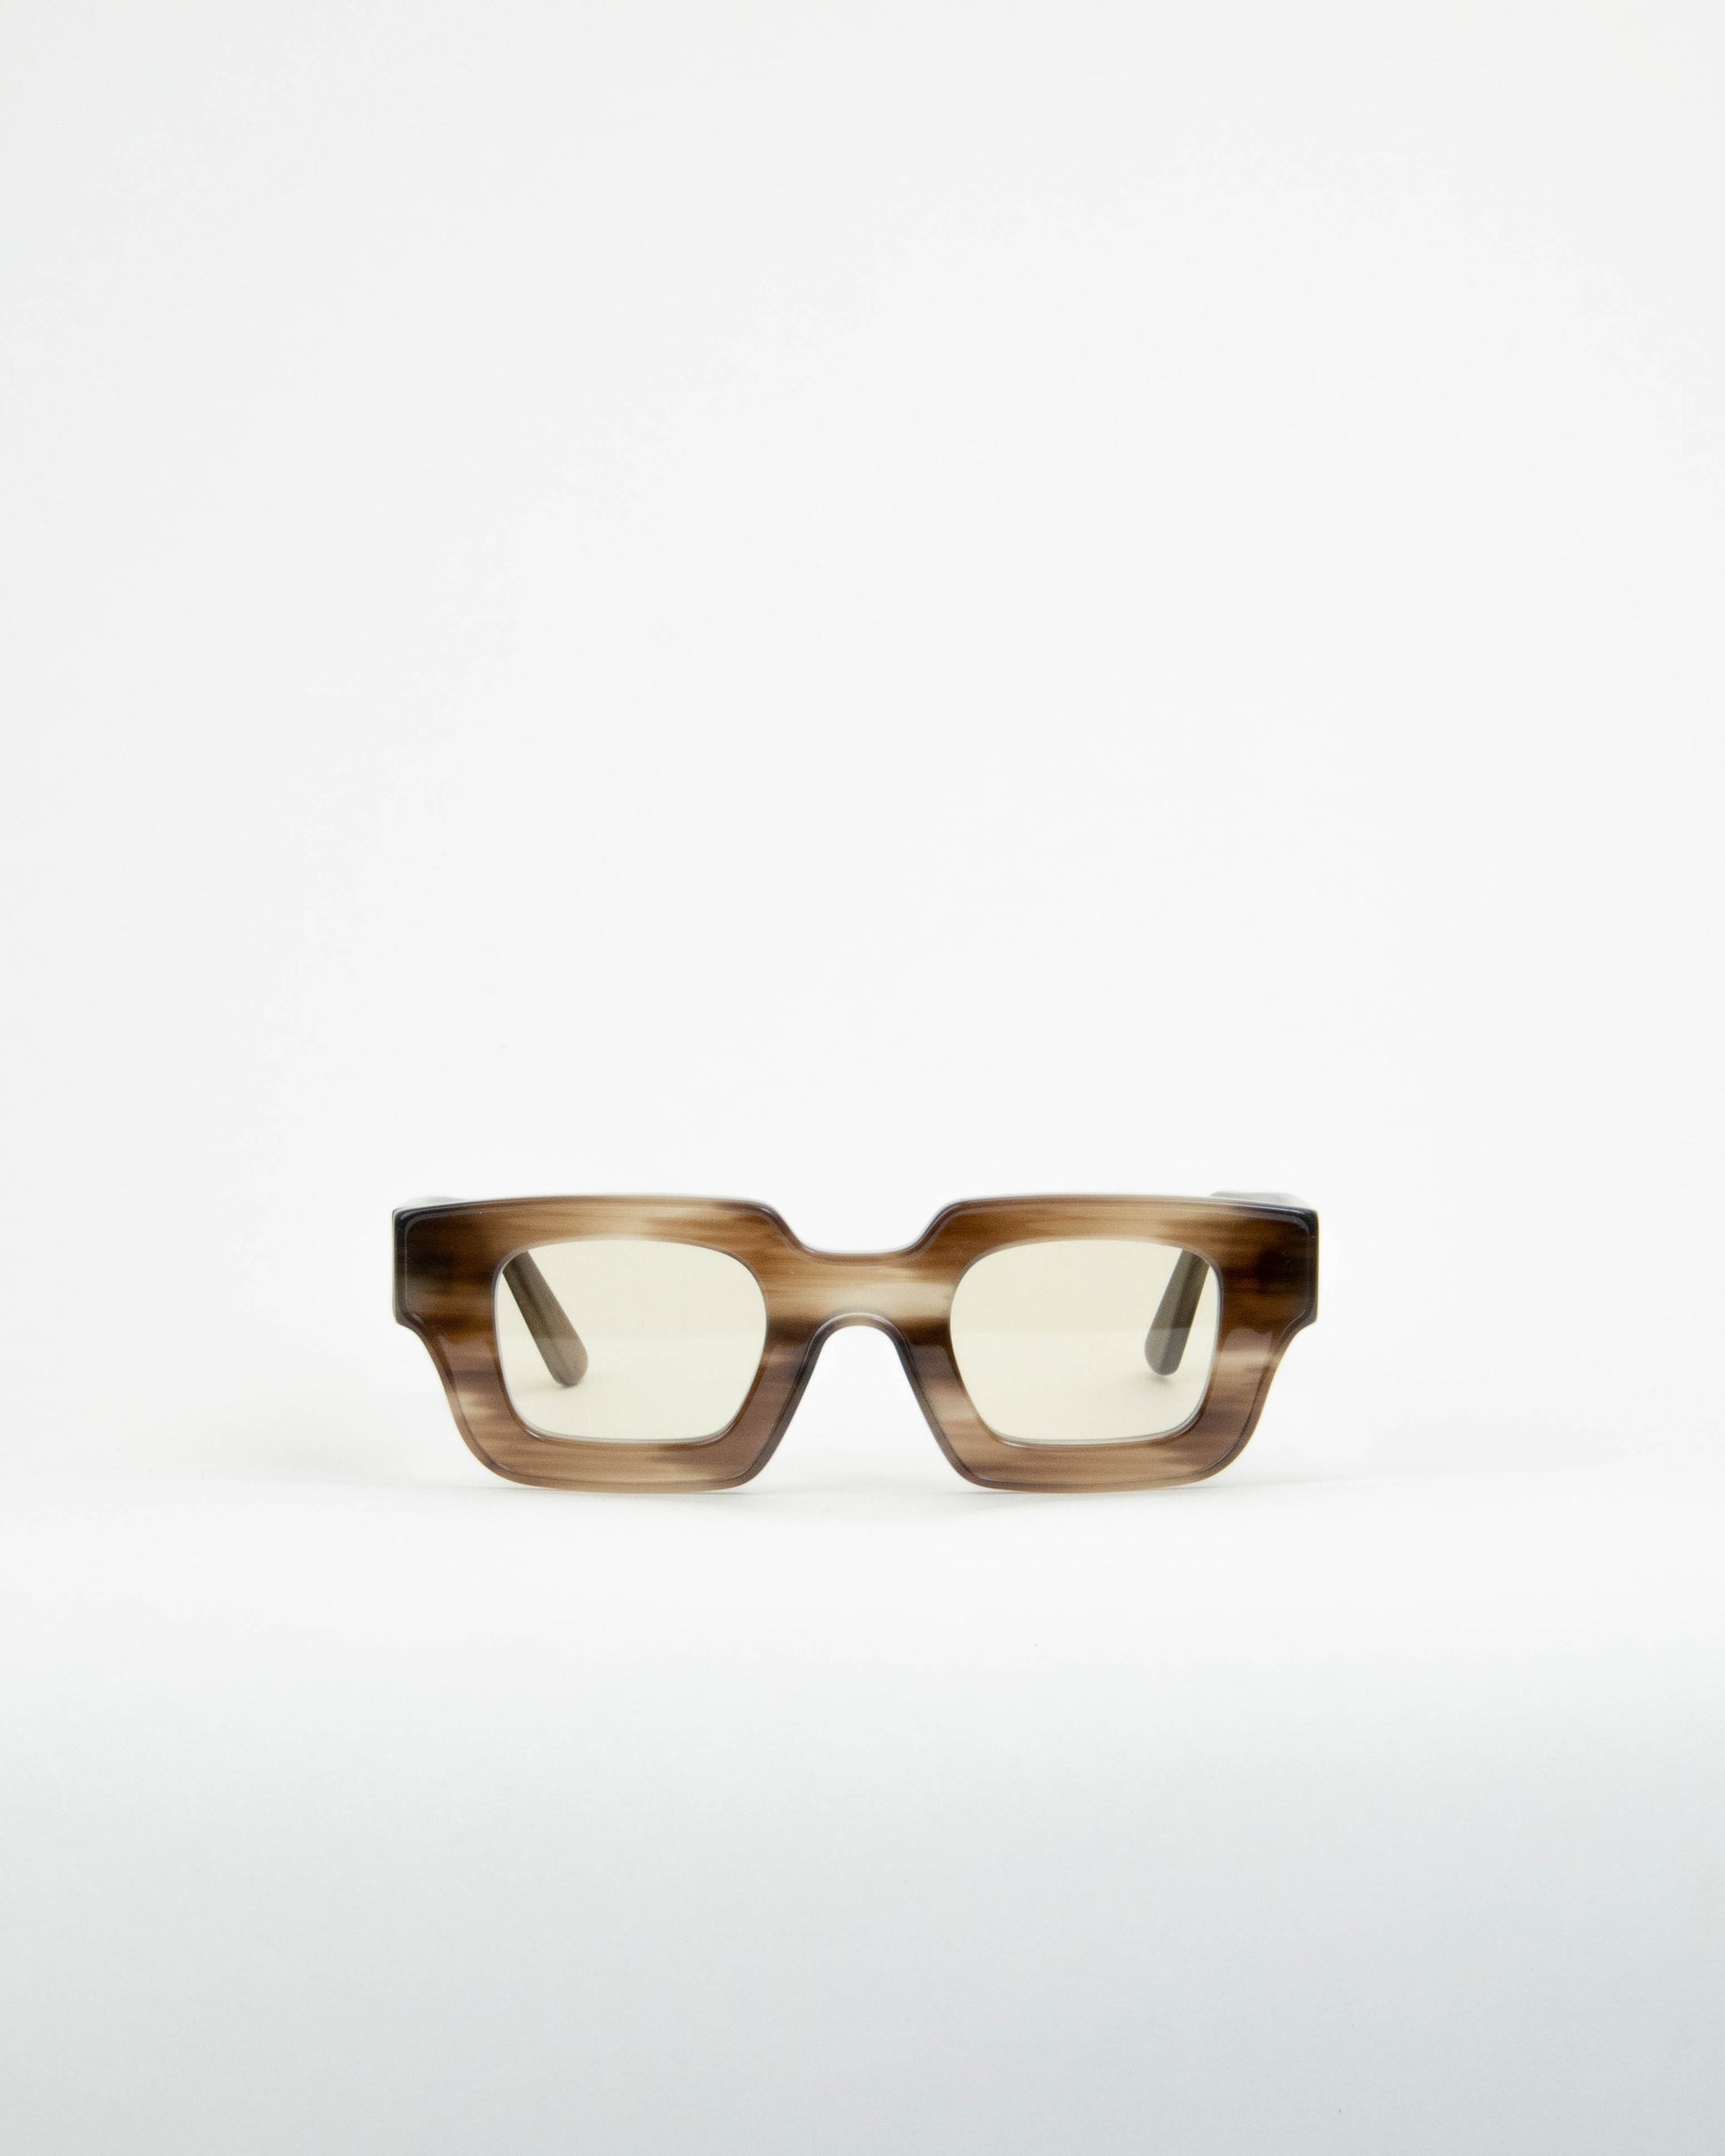 Correos Smoked Wood Musu Luxury Sunglasses